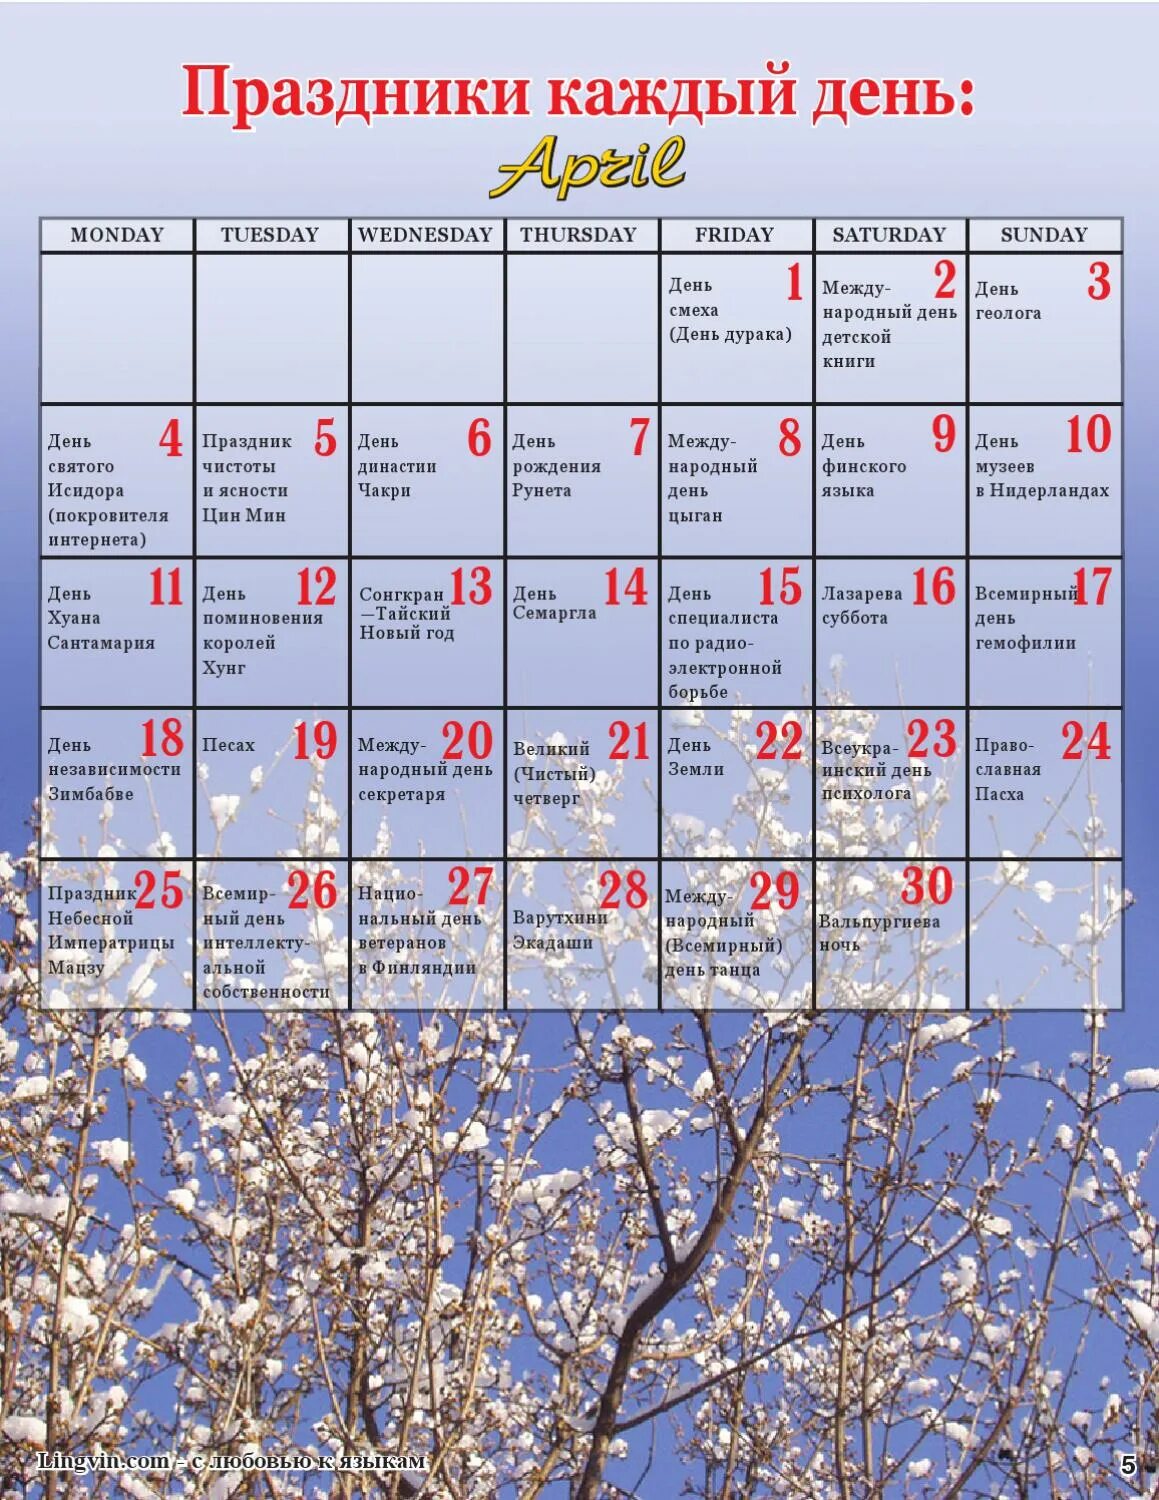 Календарь ежедневных праздников. Праздники в апреле. Праздник каждый день. Праздники в апреле каждый день.